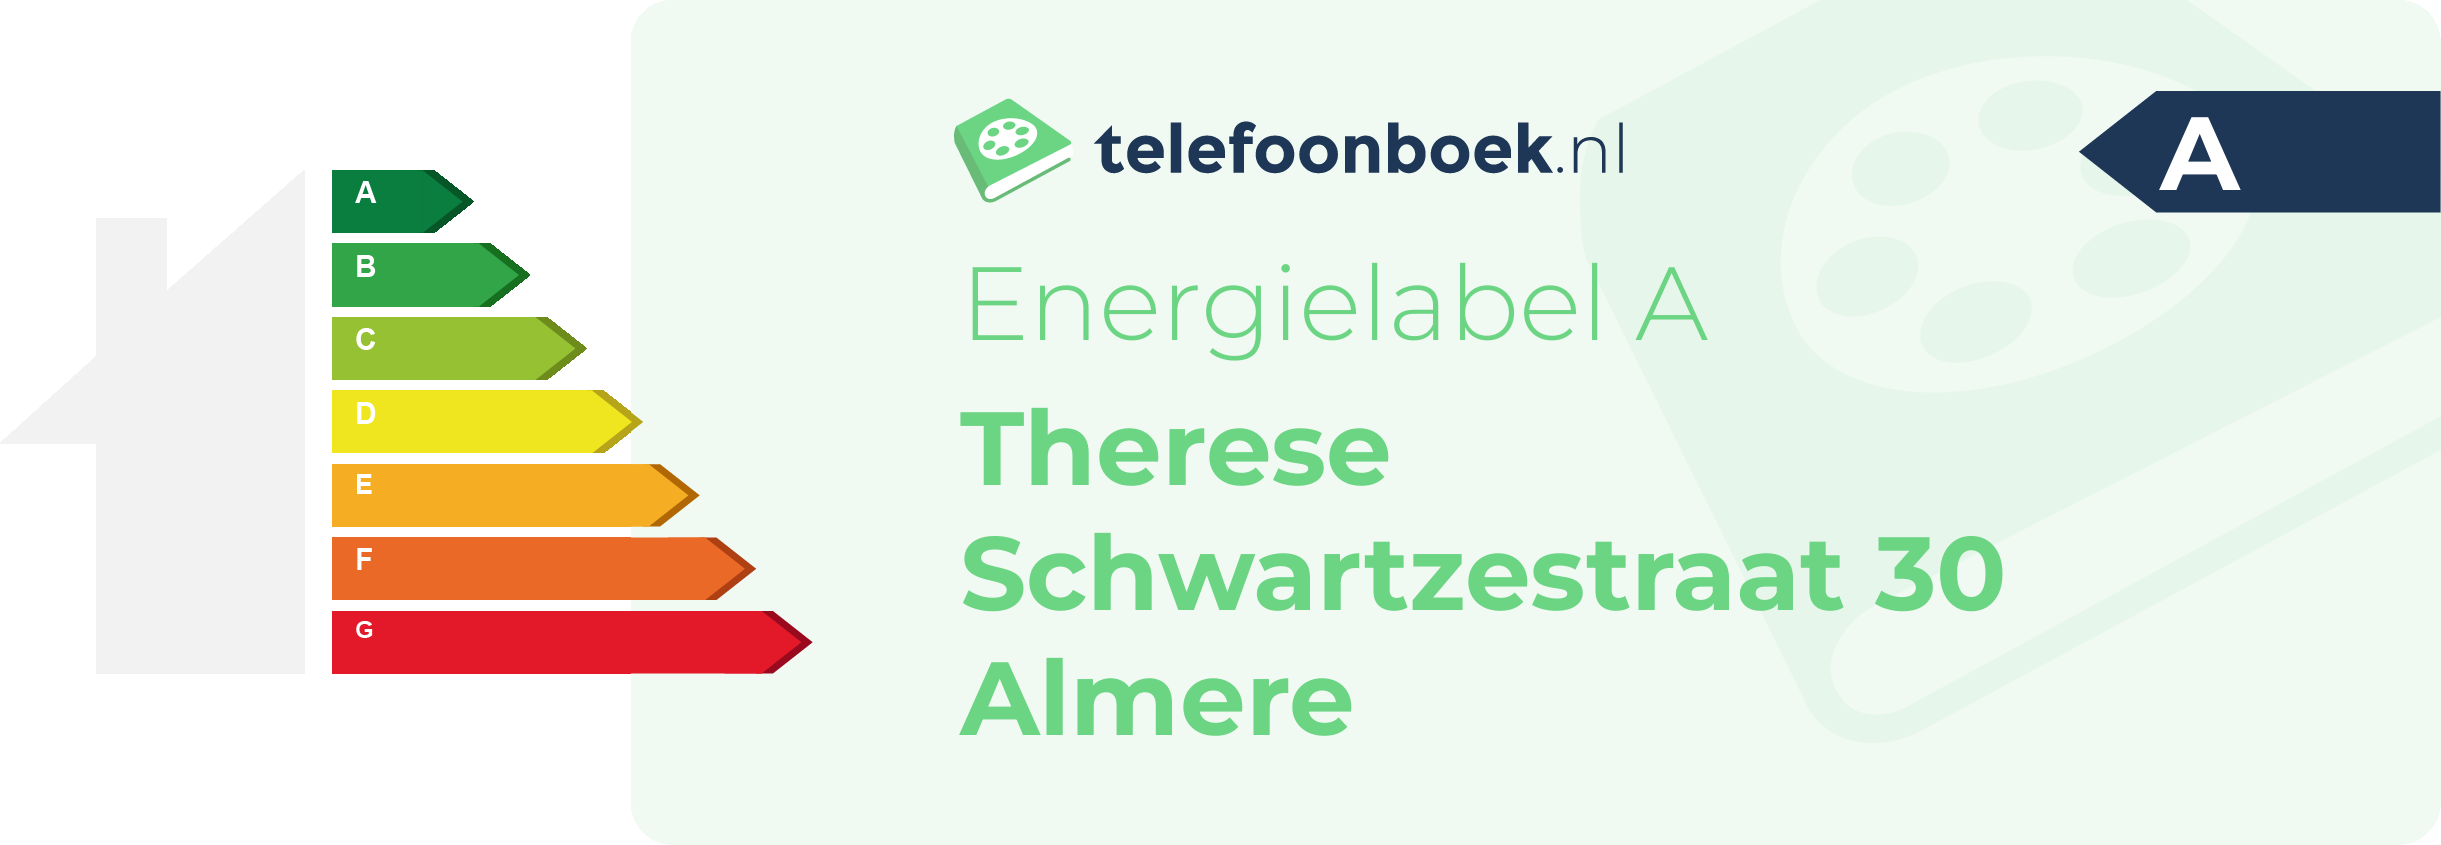 Energielabel Therese Schwartzestraat 30 Almere